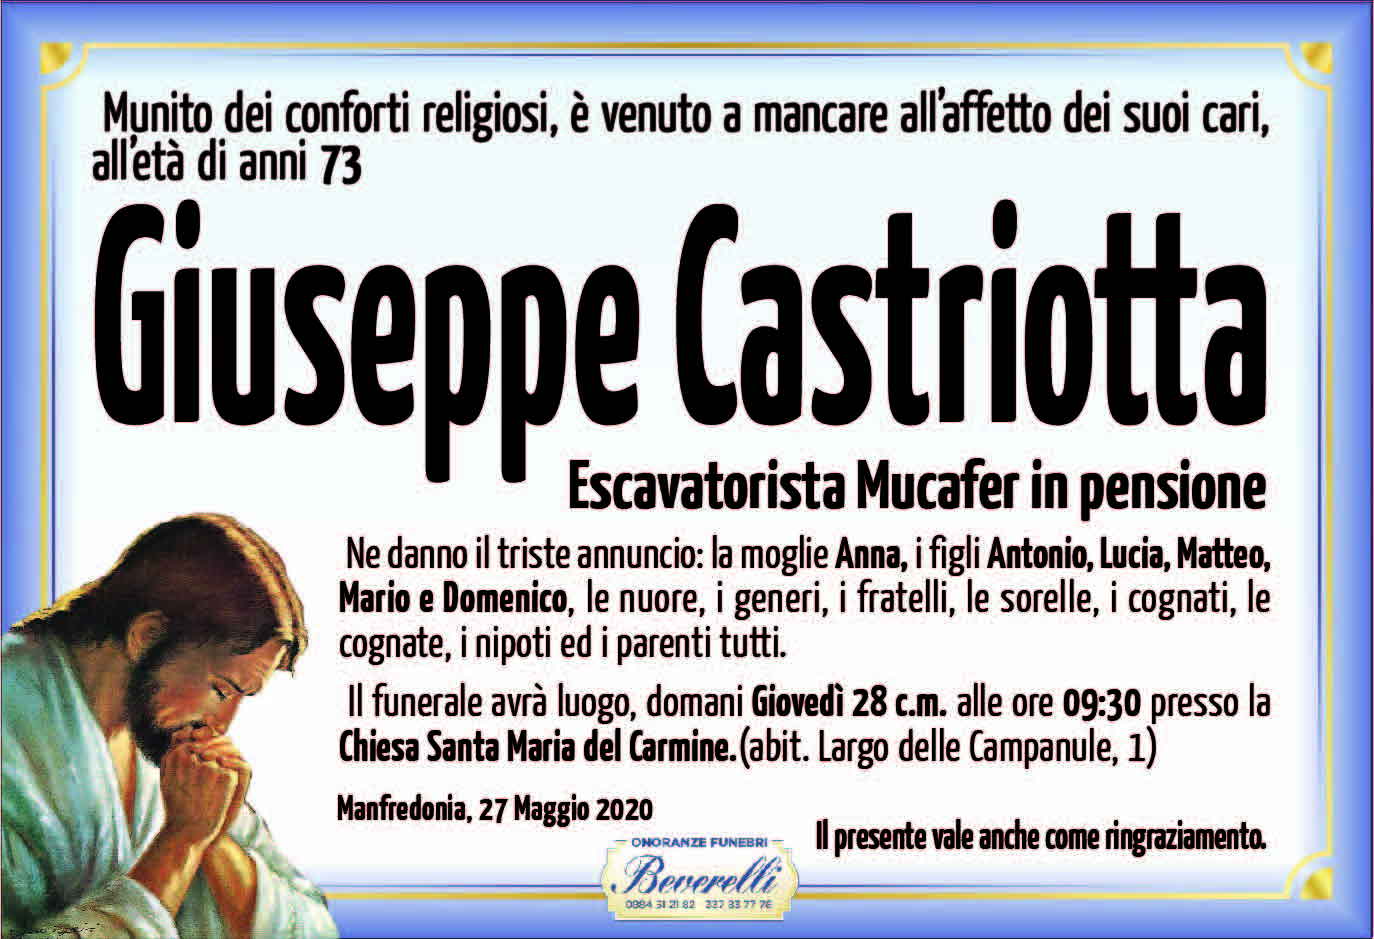 Giuseppe Castriotta